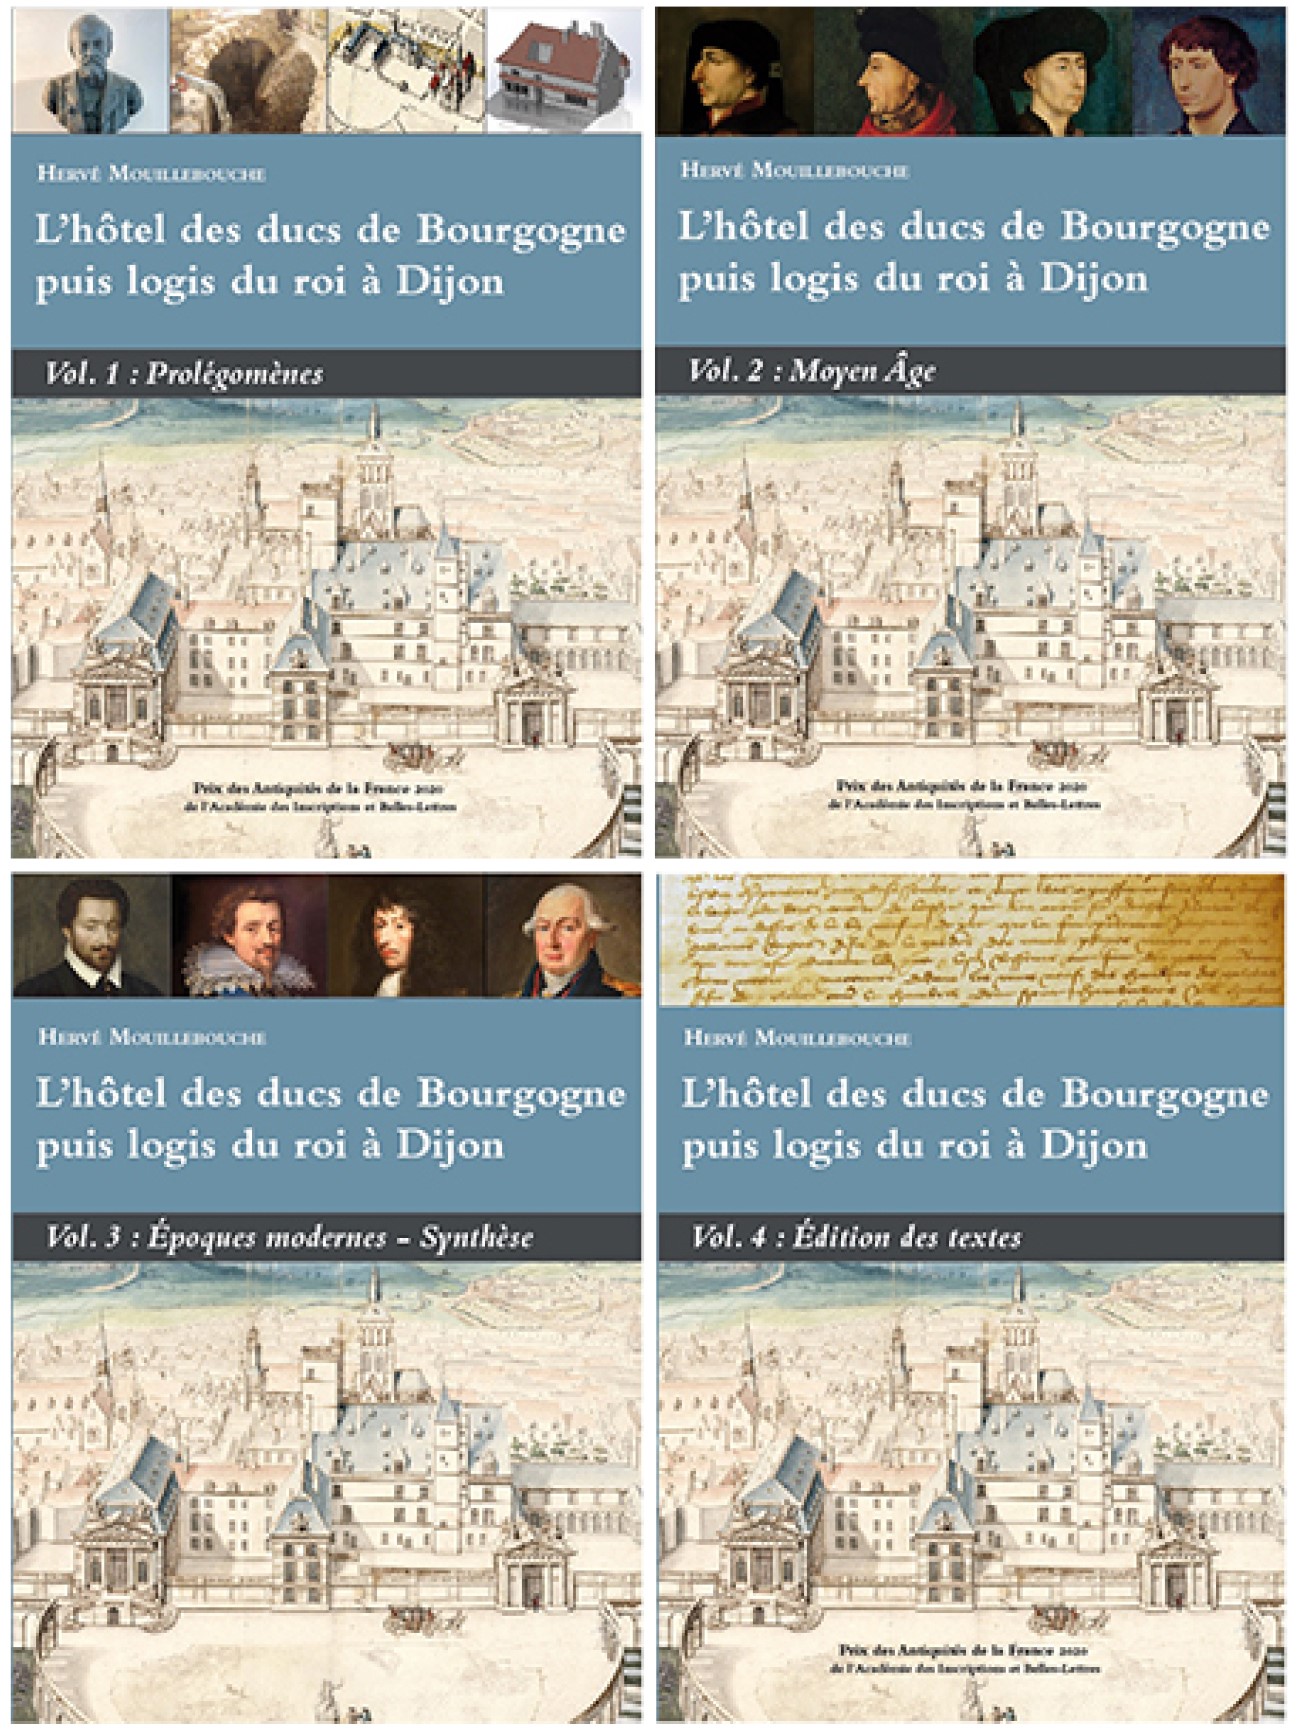 "L’hôtel des ducs de Bourgogne, puis du logis du roi à Dijon" de Hervé Mouillebouche, maître de conférences en histoire médiévale